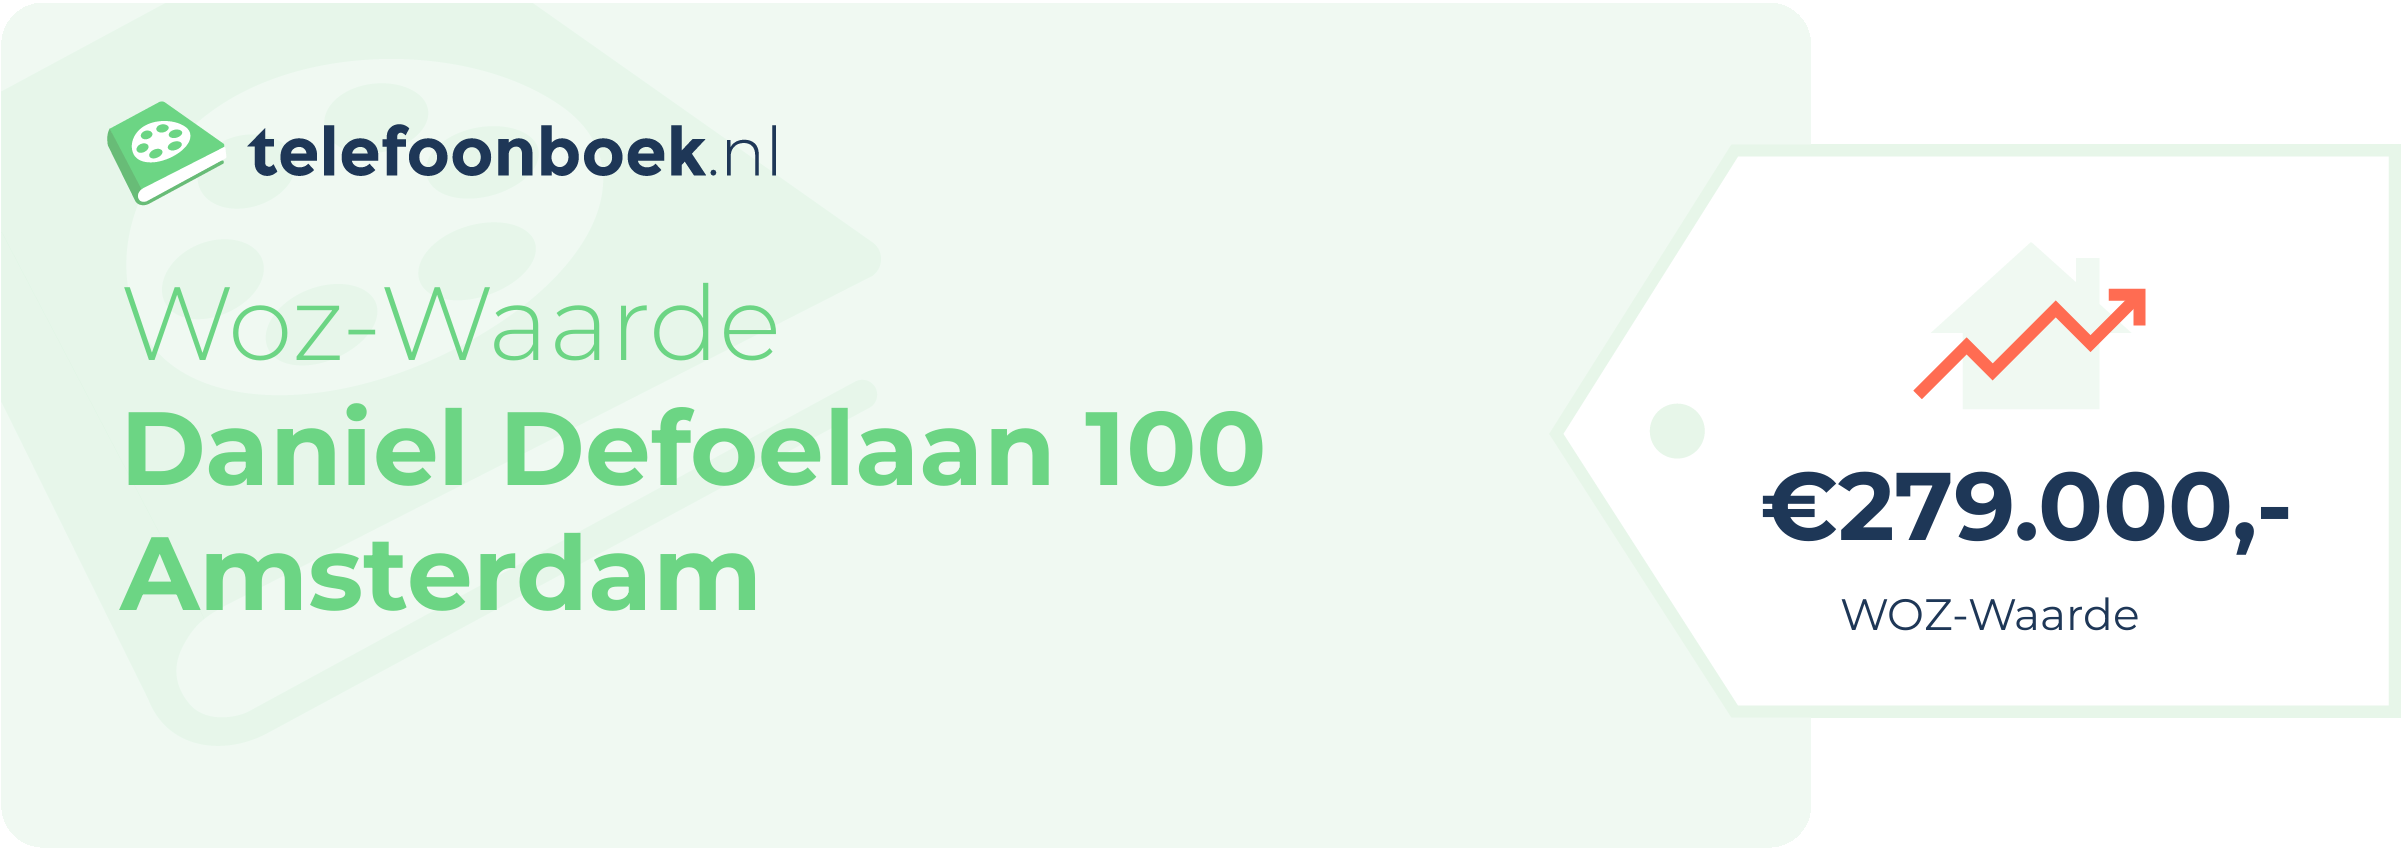 WOZ-waarde Daniel Defoelaan 100 Amsterdam